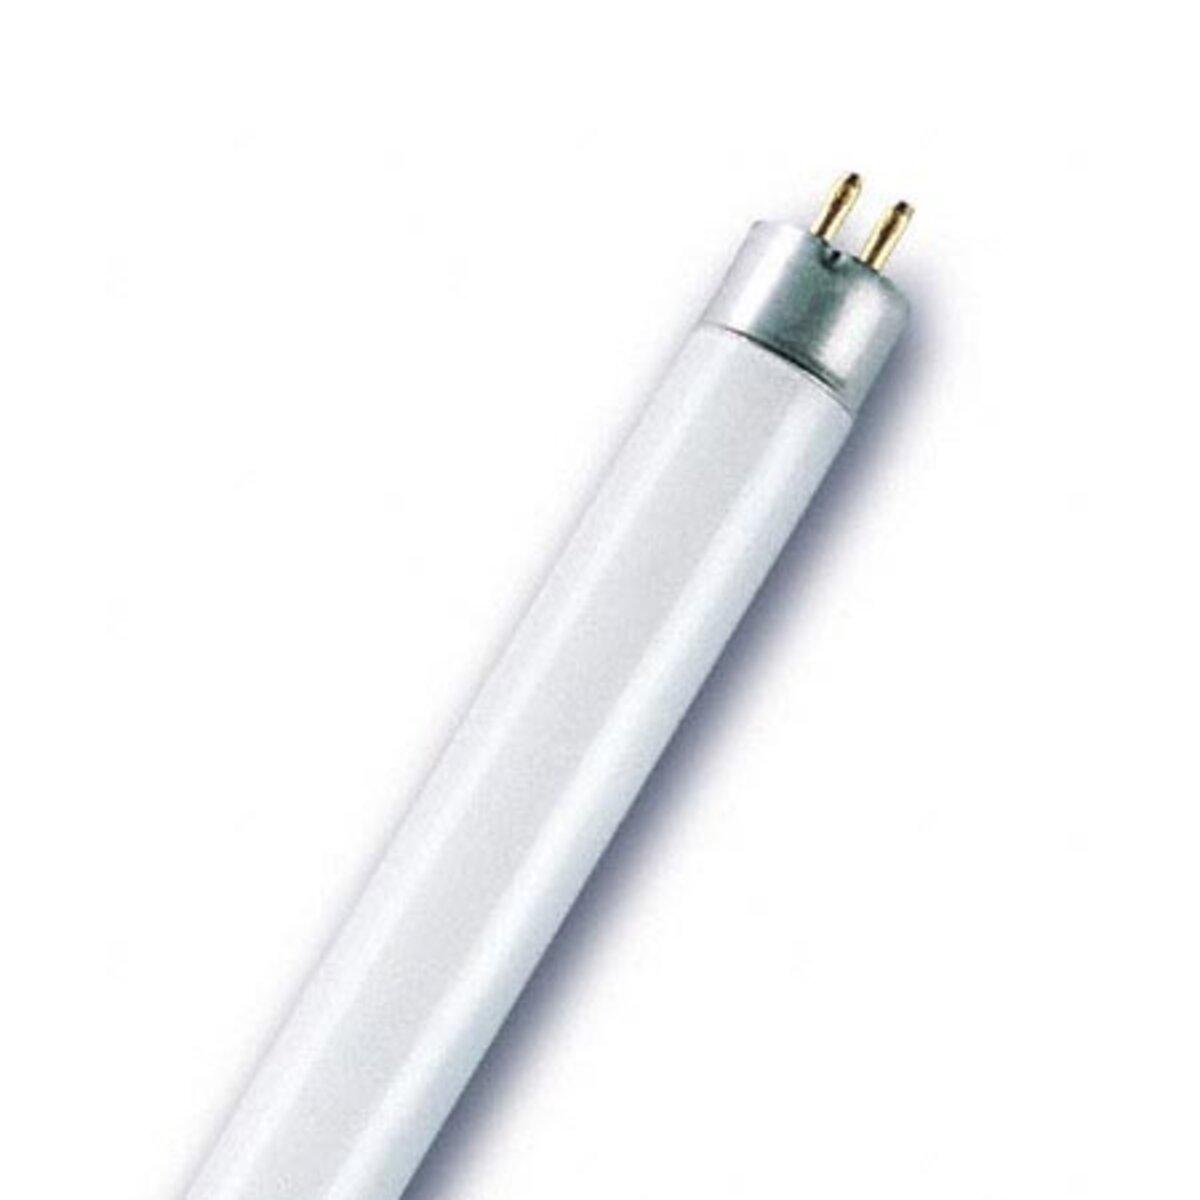 Біла лампа 4 Вт, DL-105 / DL-07